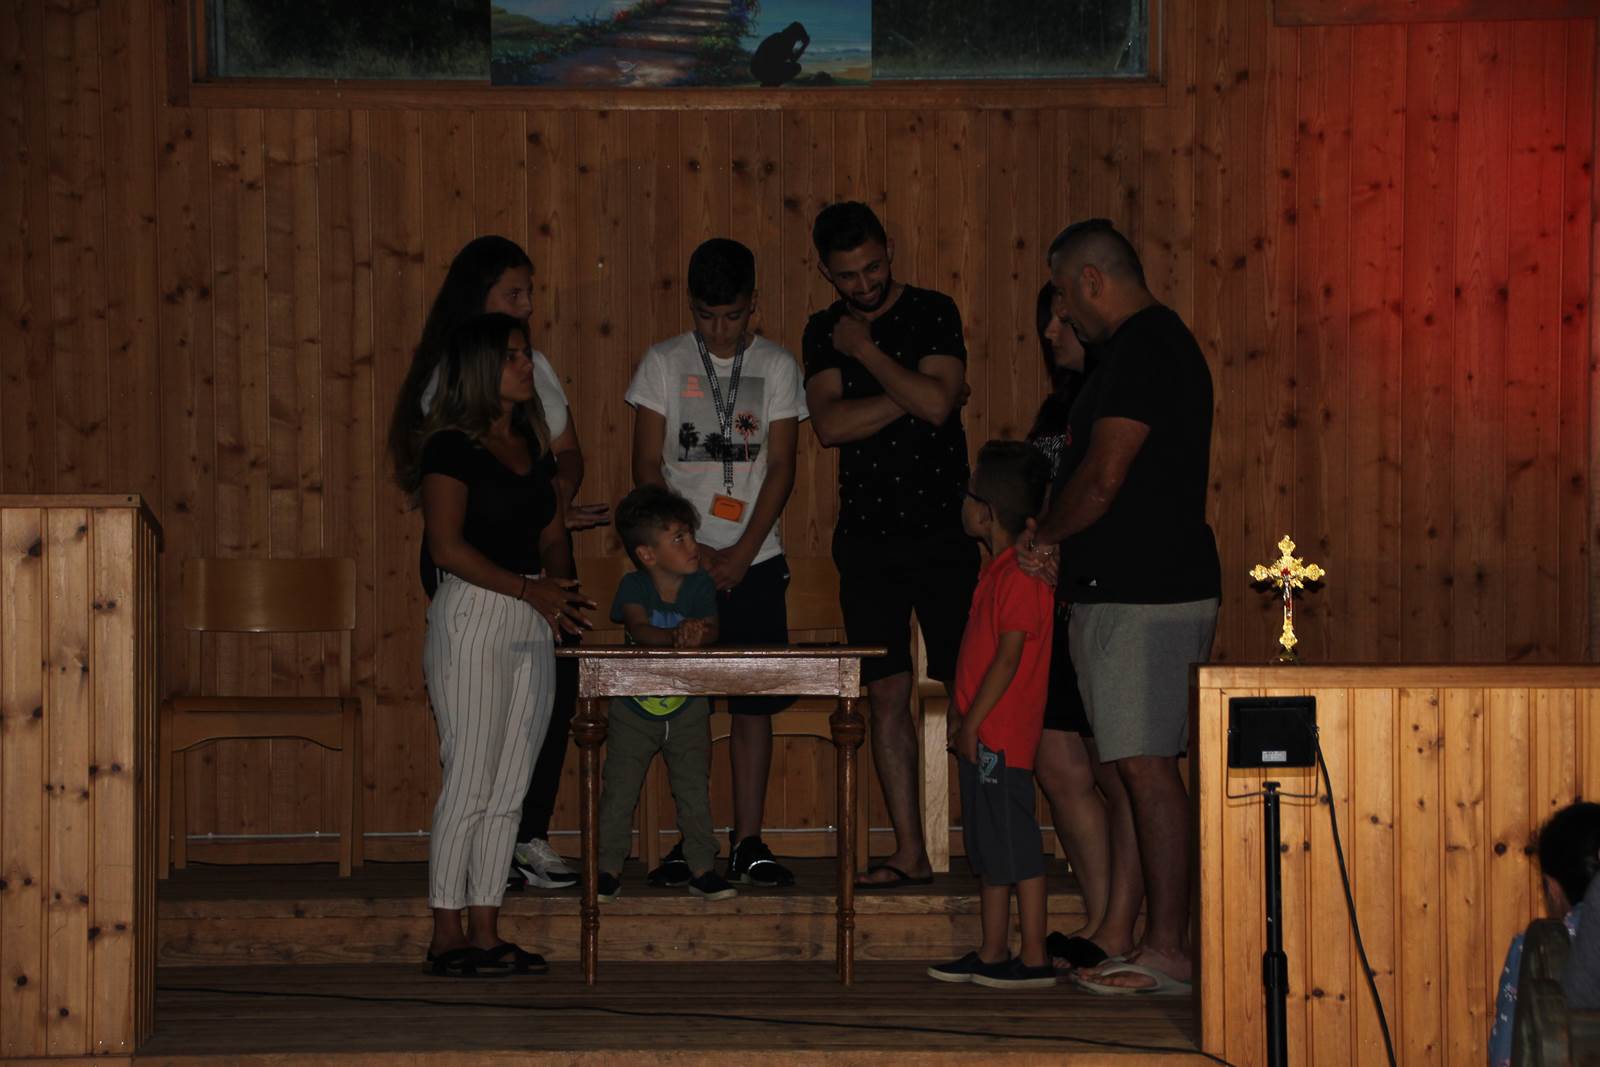 Kaldeiska katolikers familj och ungdomsläger, 22 - 26 juli 2019